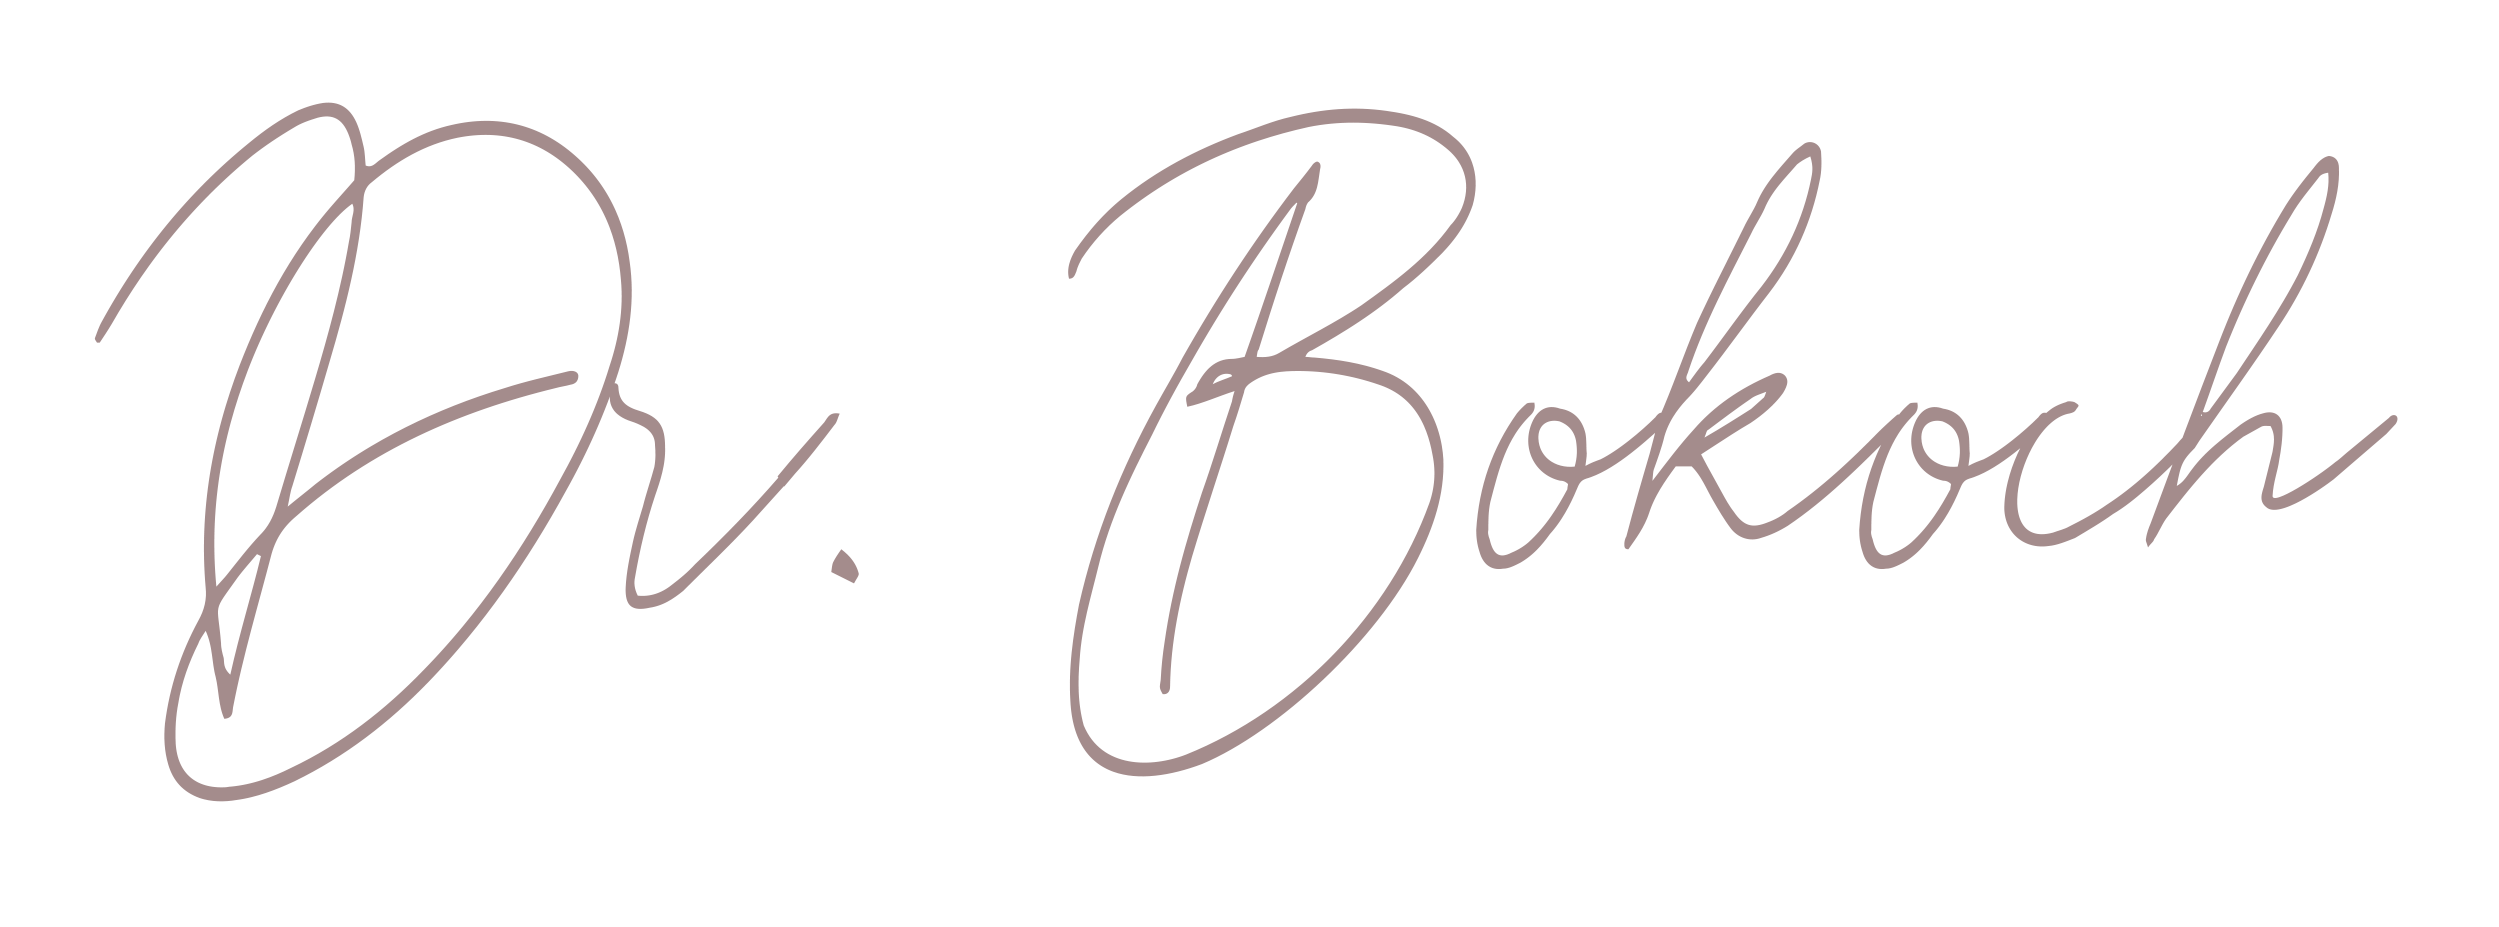 Dr. Bokoch